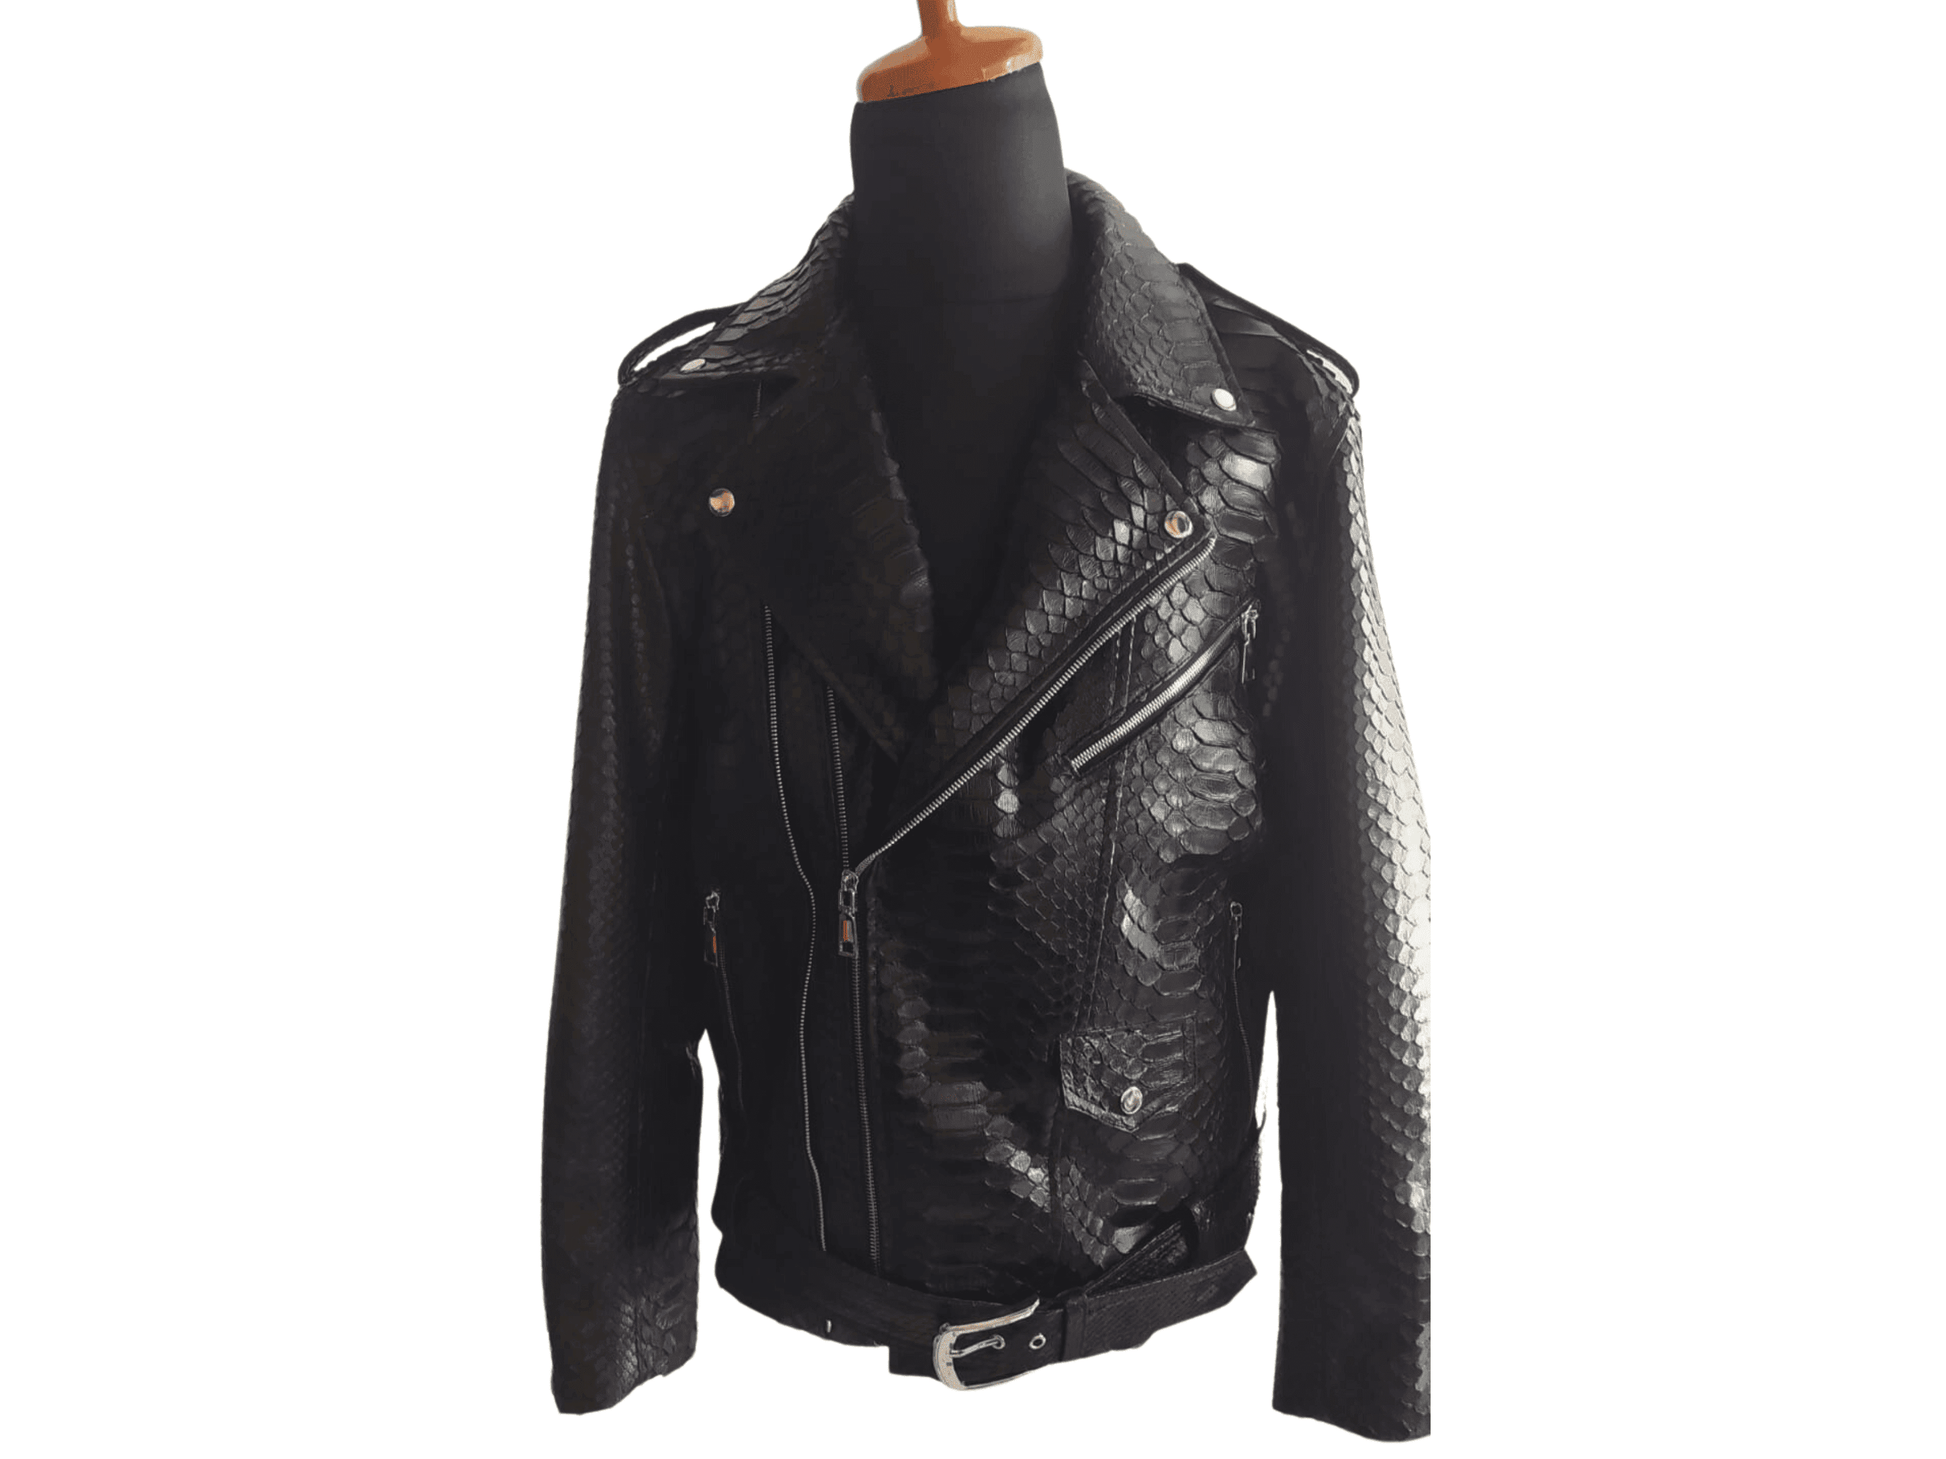 Men Jacket Black Motorcycle Leather Jacket Real Python Snake Skin with Glossy Finishing Python Jacket by LFM Fashion